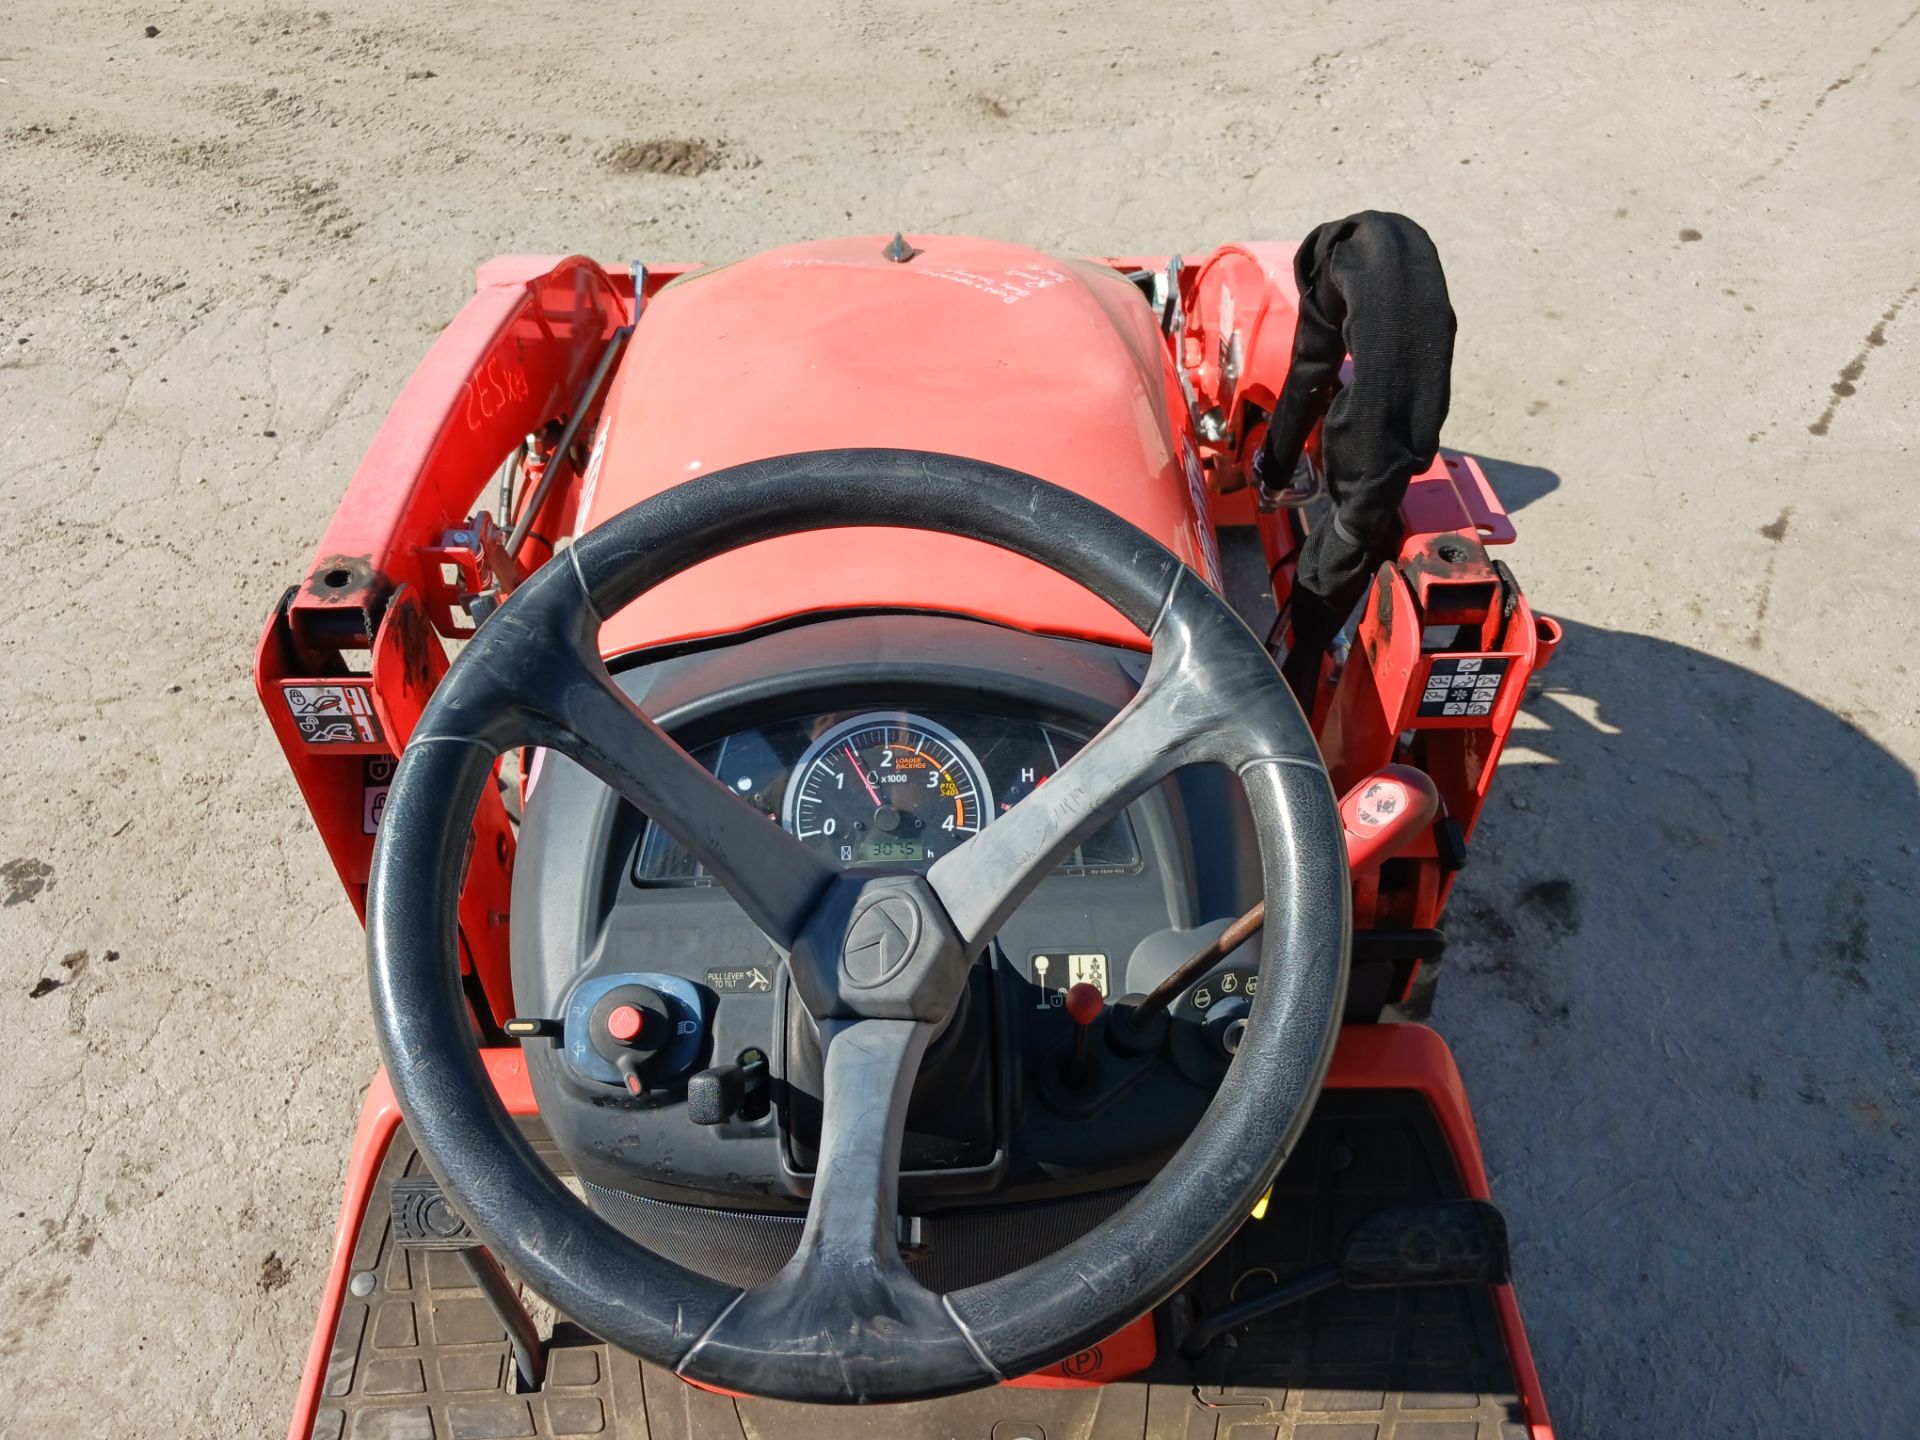 2019 Kubota BX23S Backhoe Loader Tractor - Image 8 of 19